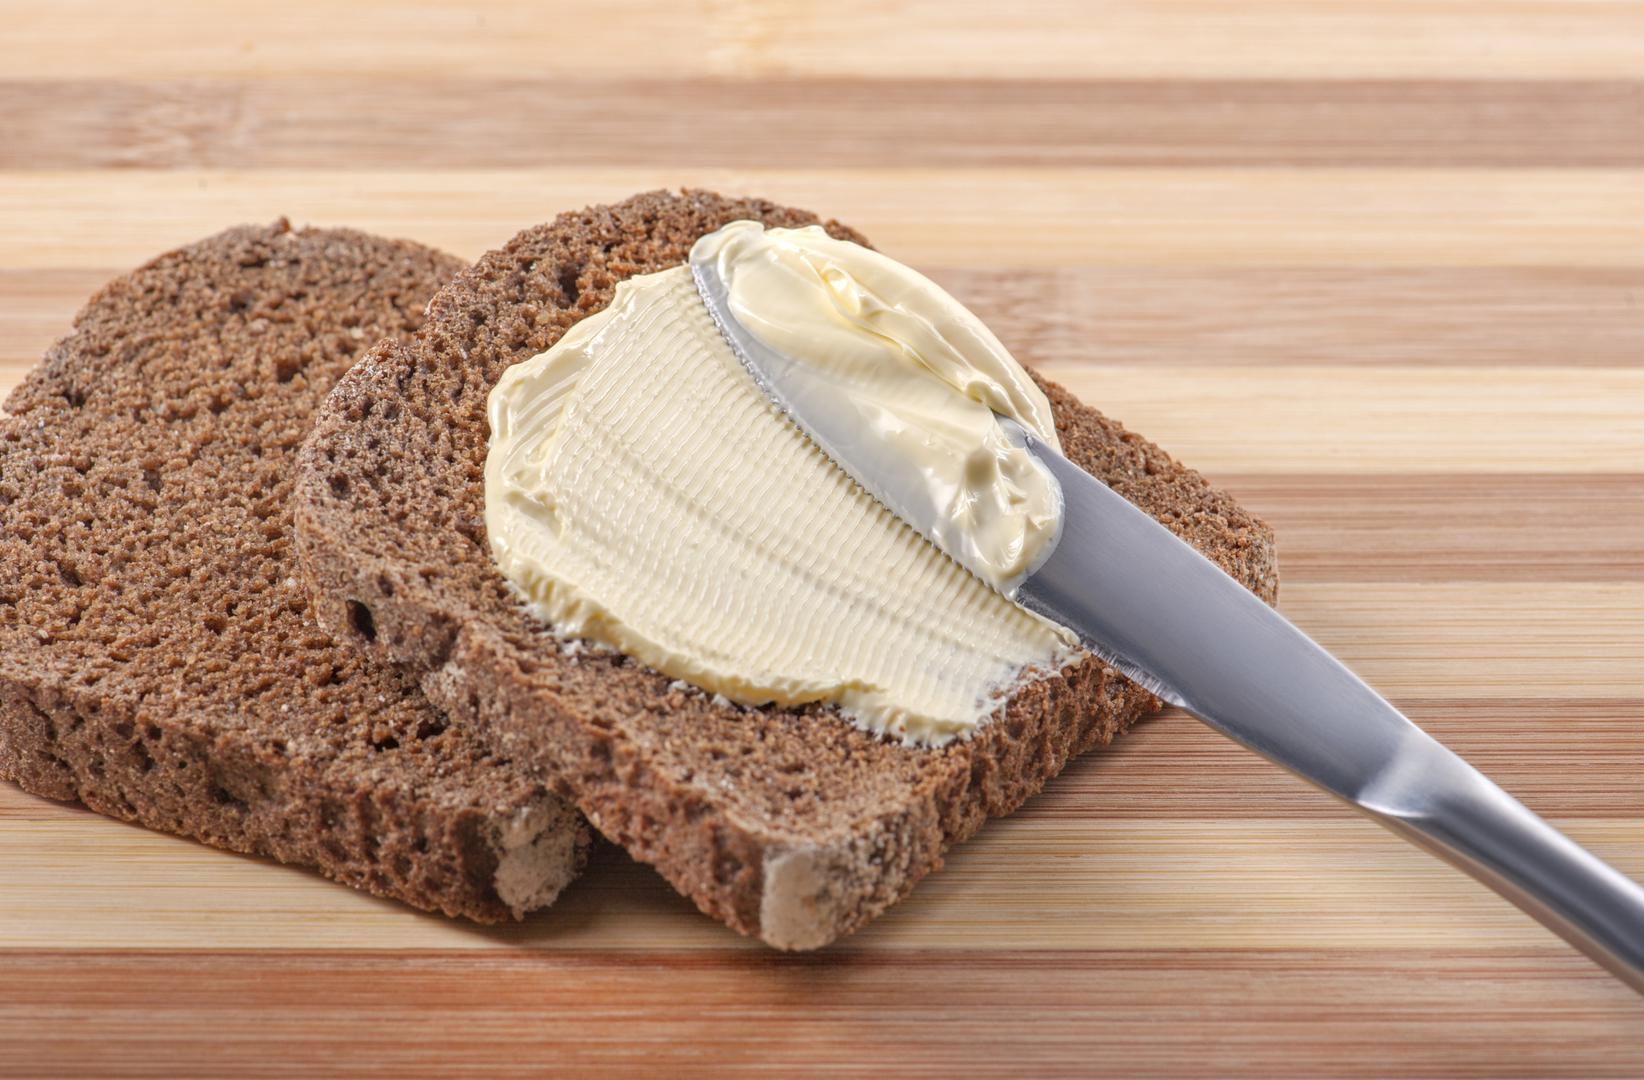 Margarin koji sadrži trans nezasićene masne kiseline ne bi trebalo konzumirati.